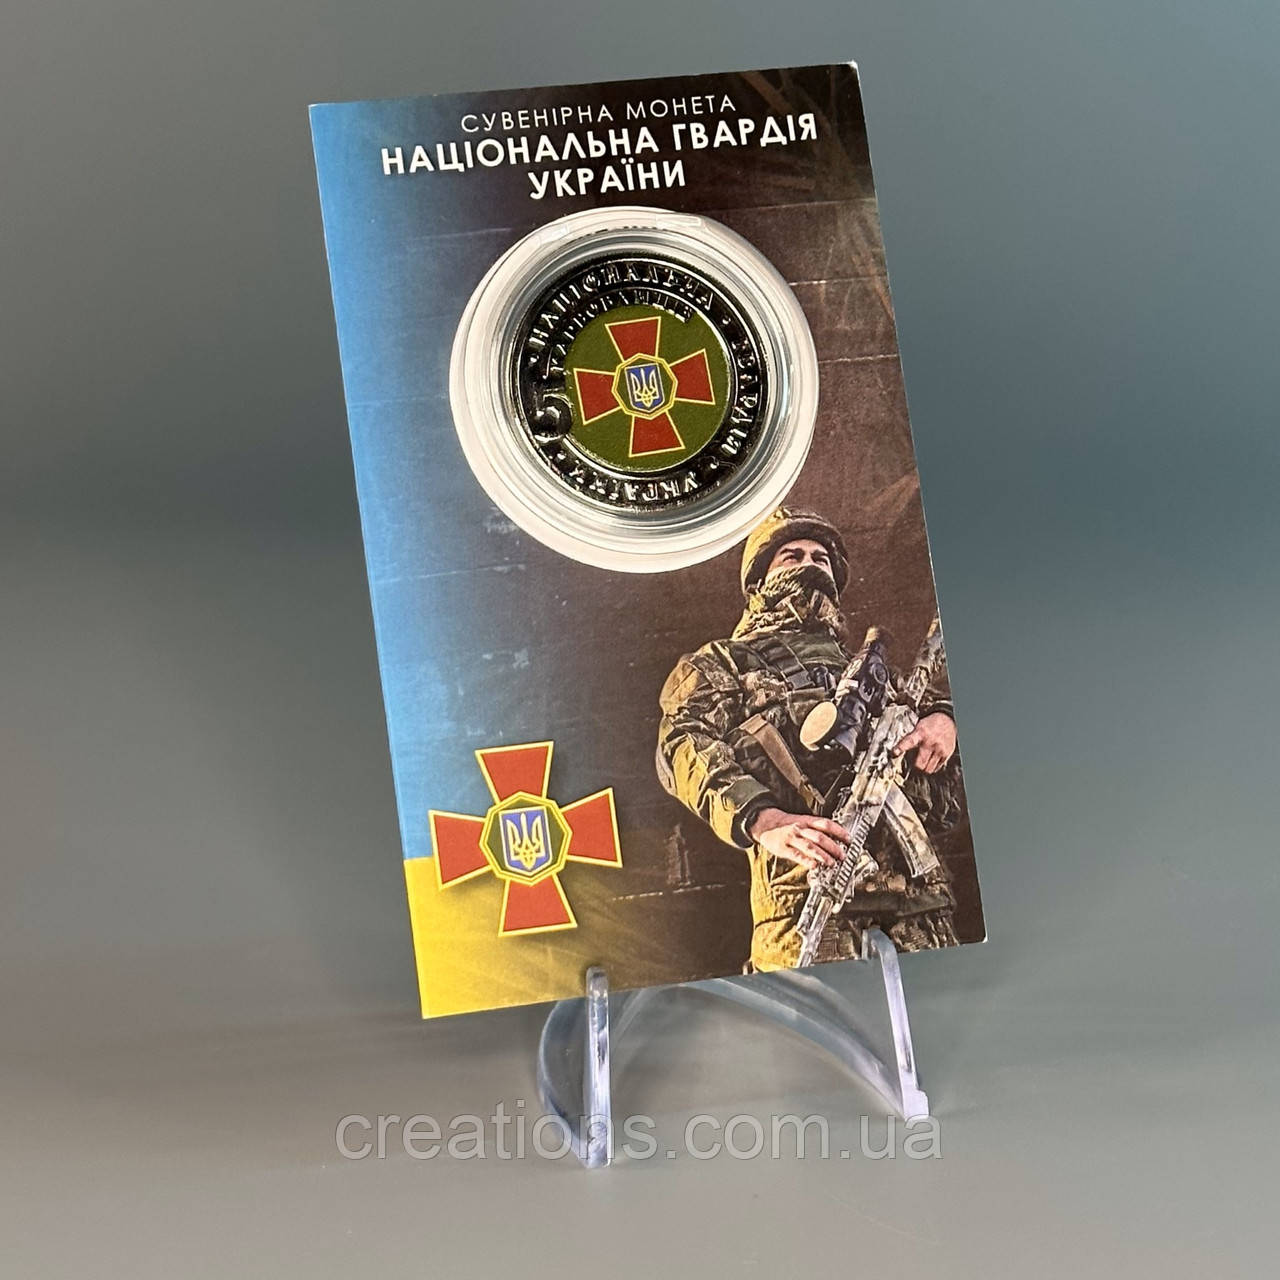 Сувенірна монета "Національна Гвардія України" приватний випуск монет 2023 р.